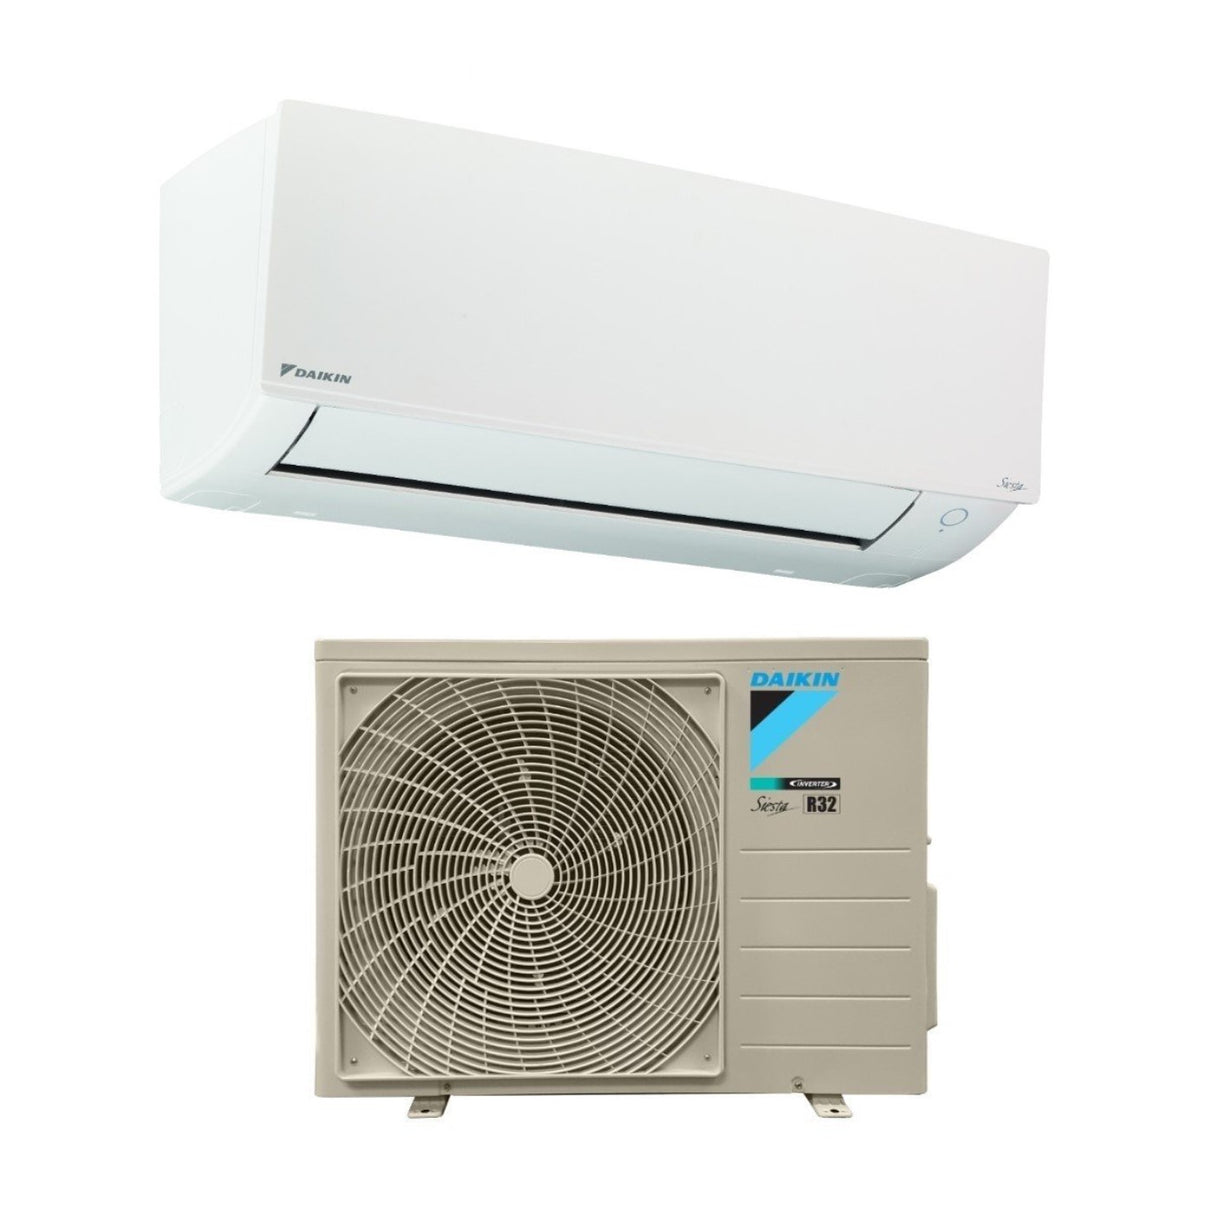 immagine-3-daikin-climatizzatore-condizionatore-daikin-inverter-serie-siesta-18000-btu-atxc50b-r-32-wi-fi-optional-ean-8059657004567